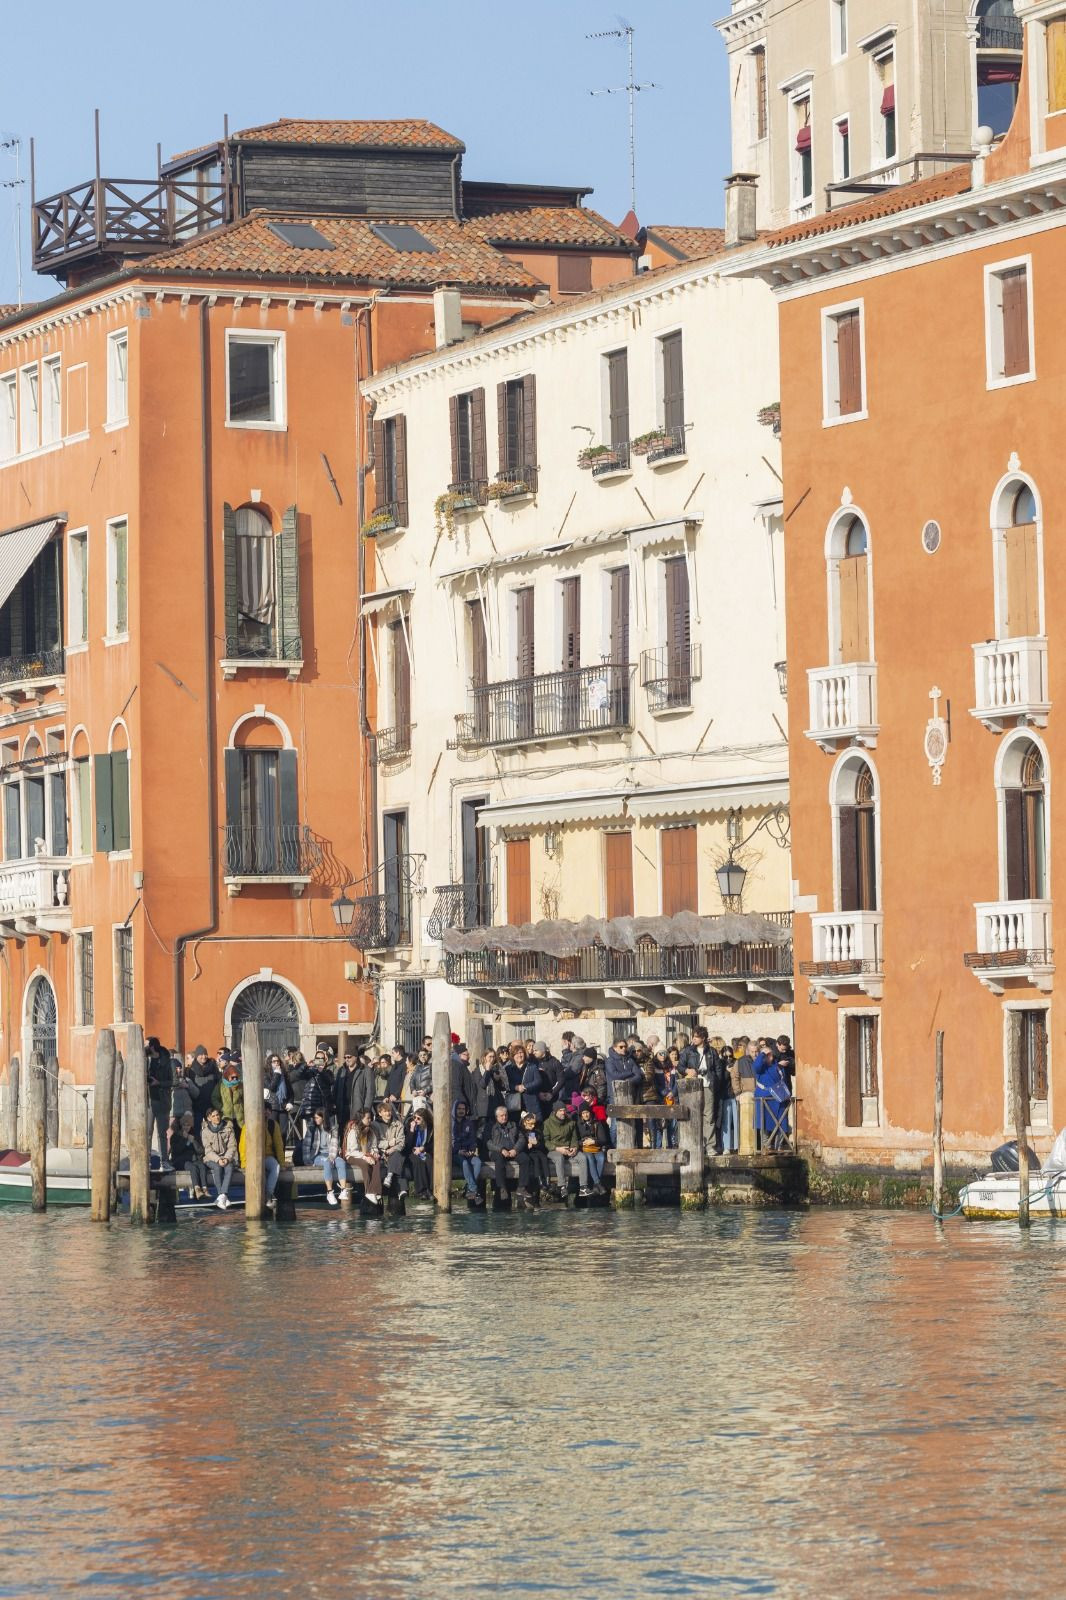 Venedik Karnavalı'ndan renkli görüntüler - Sayfa 3